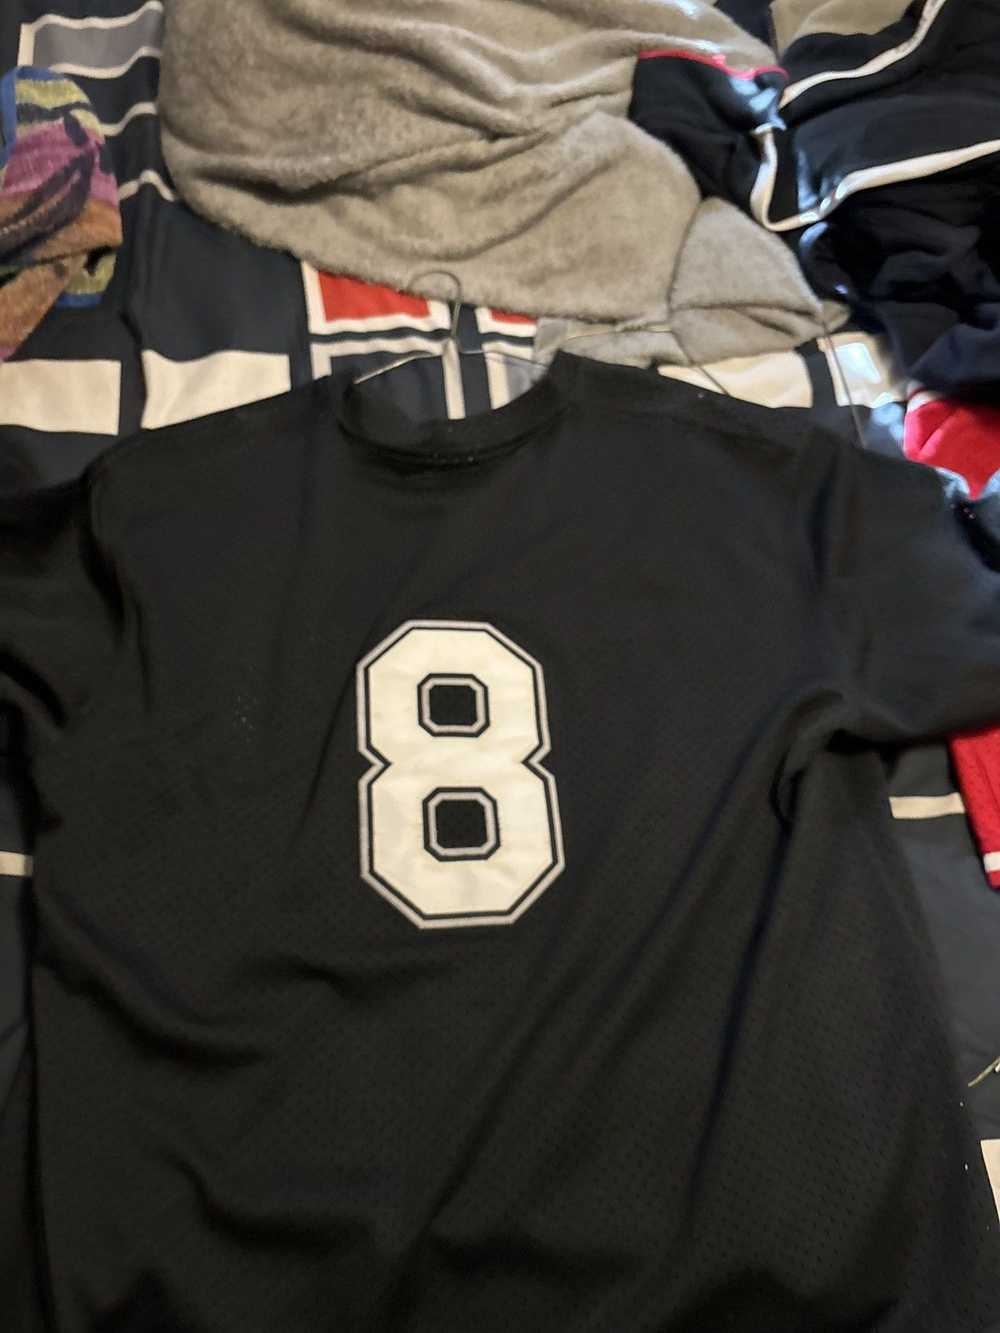 Mitchell & Ness White Sox jersey - image 4